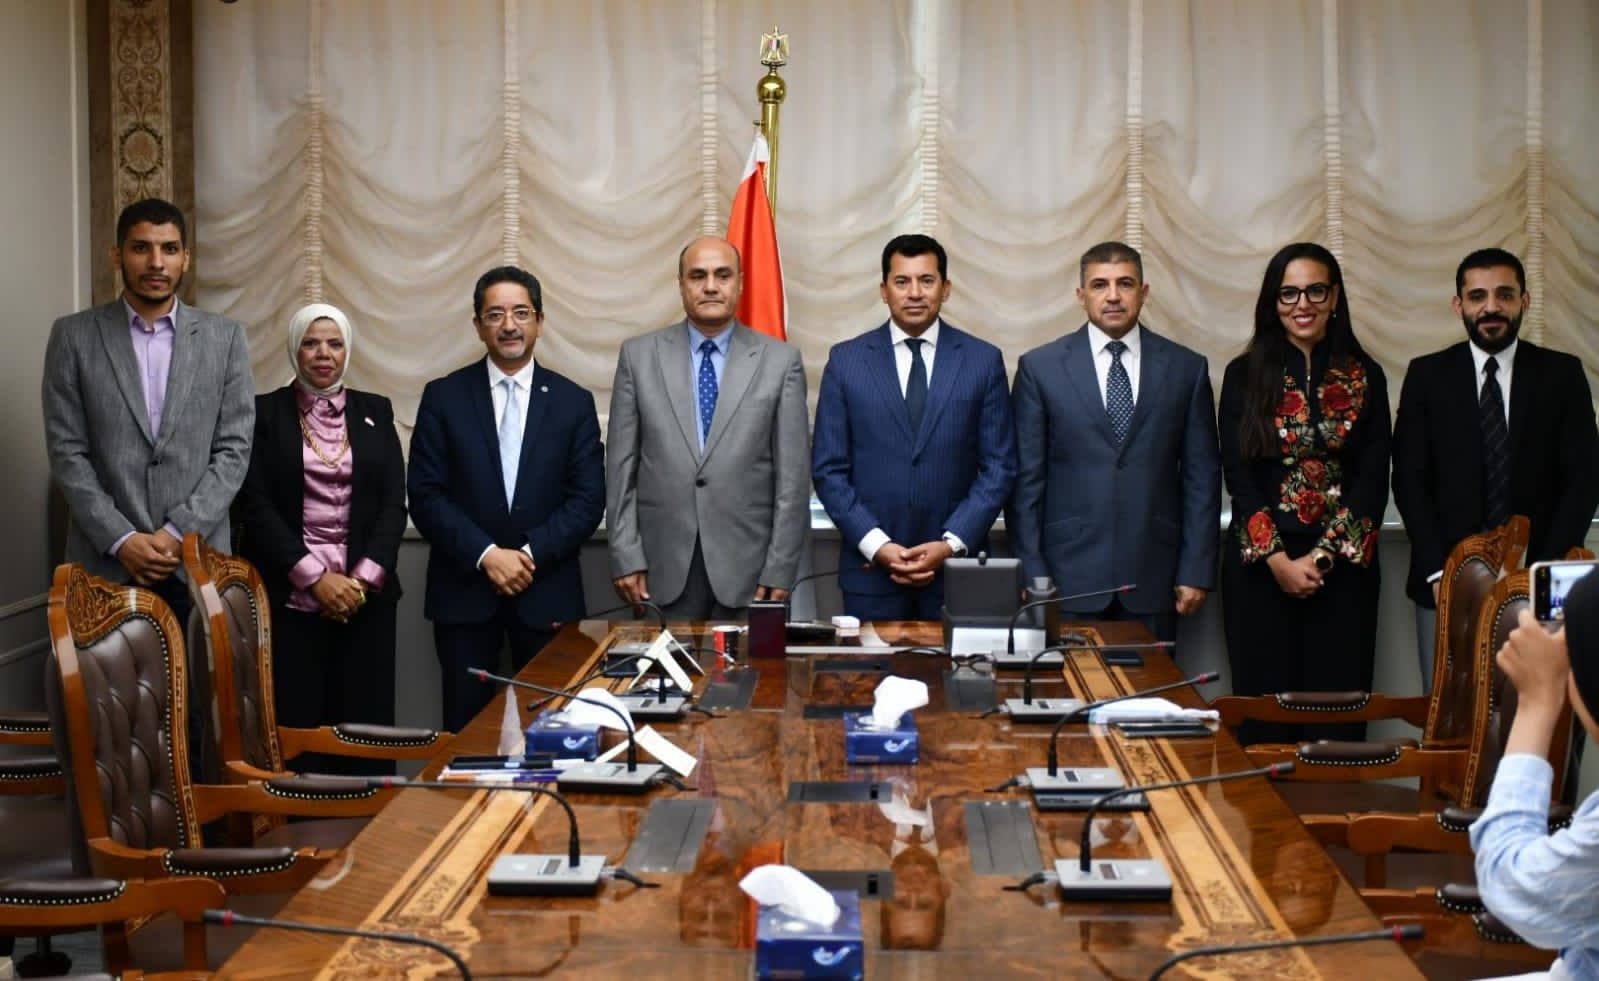 وزير الشباب والرياضة يشهد مراسم توقيع بروتوكول تعاون بين الوزارة وجامعة القاهرة الجديدة التكنولوجية  (3)